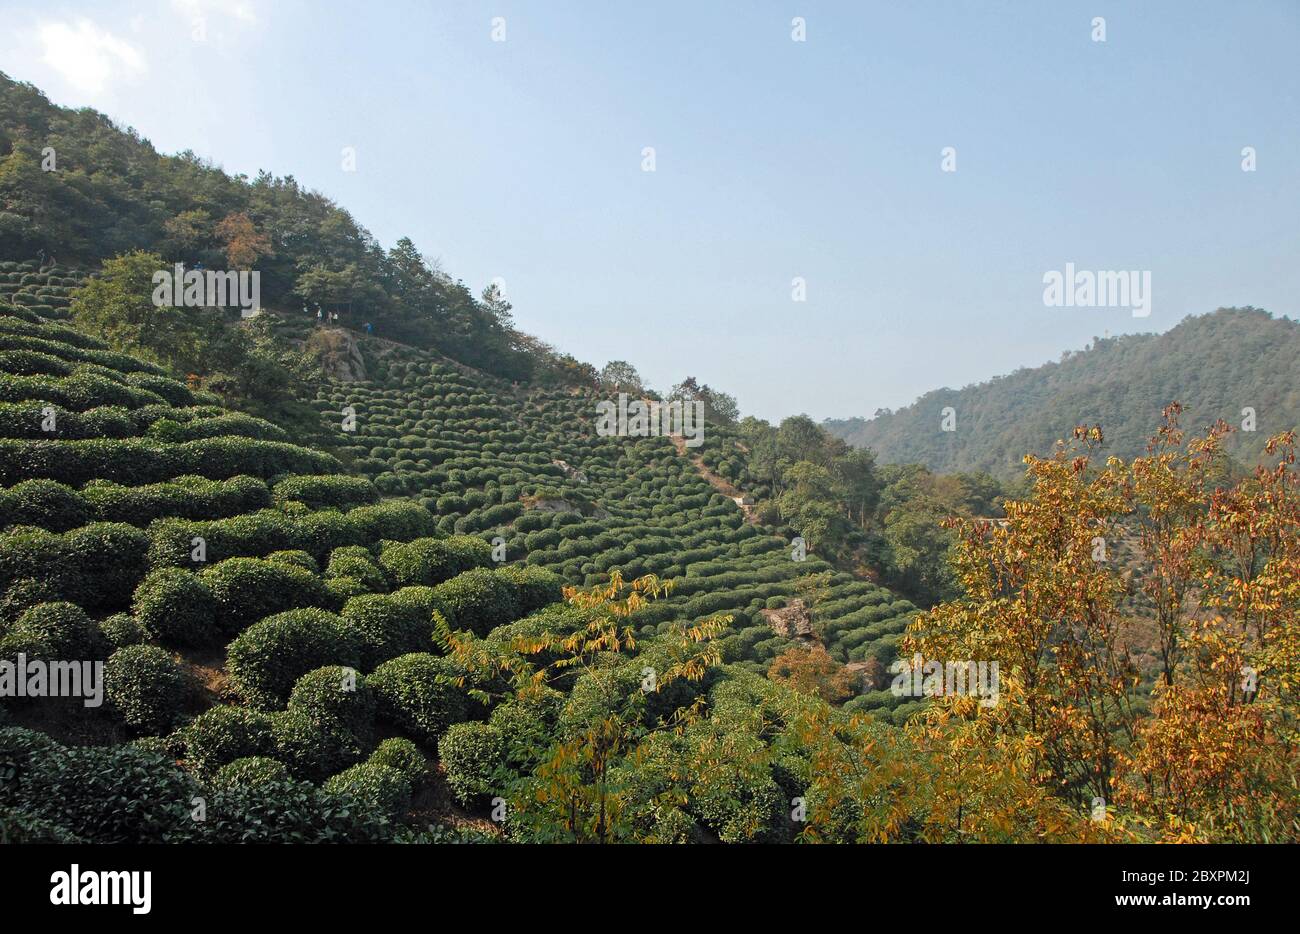 Longjing Tea Village in der Nähe von Hangzhou in der Provinz Zhejiang, China. Blick auf die Hügel und Felder, wo der berühmte Longjing Tee angebaut wird Stockfoto